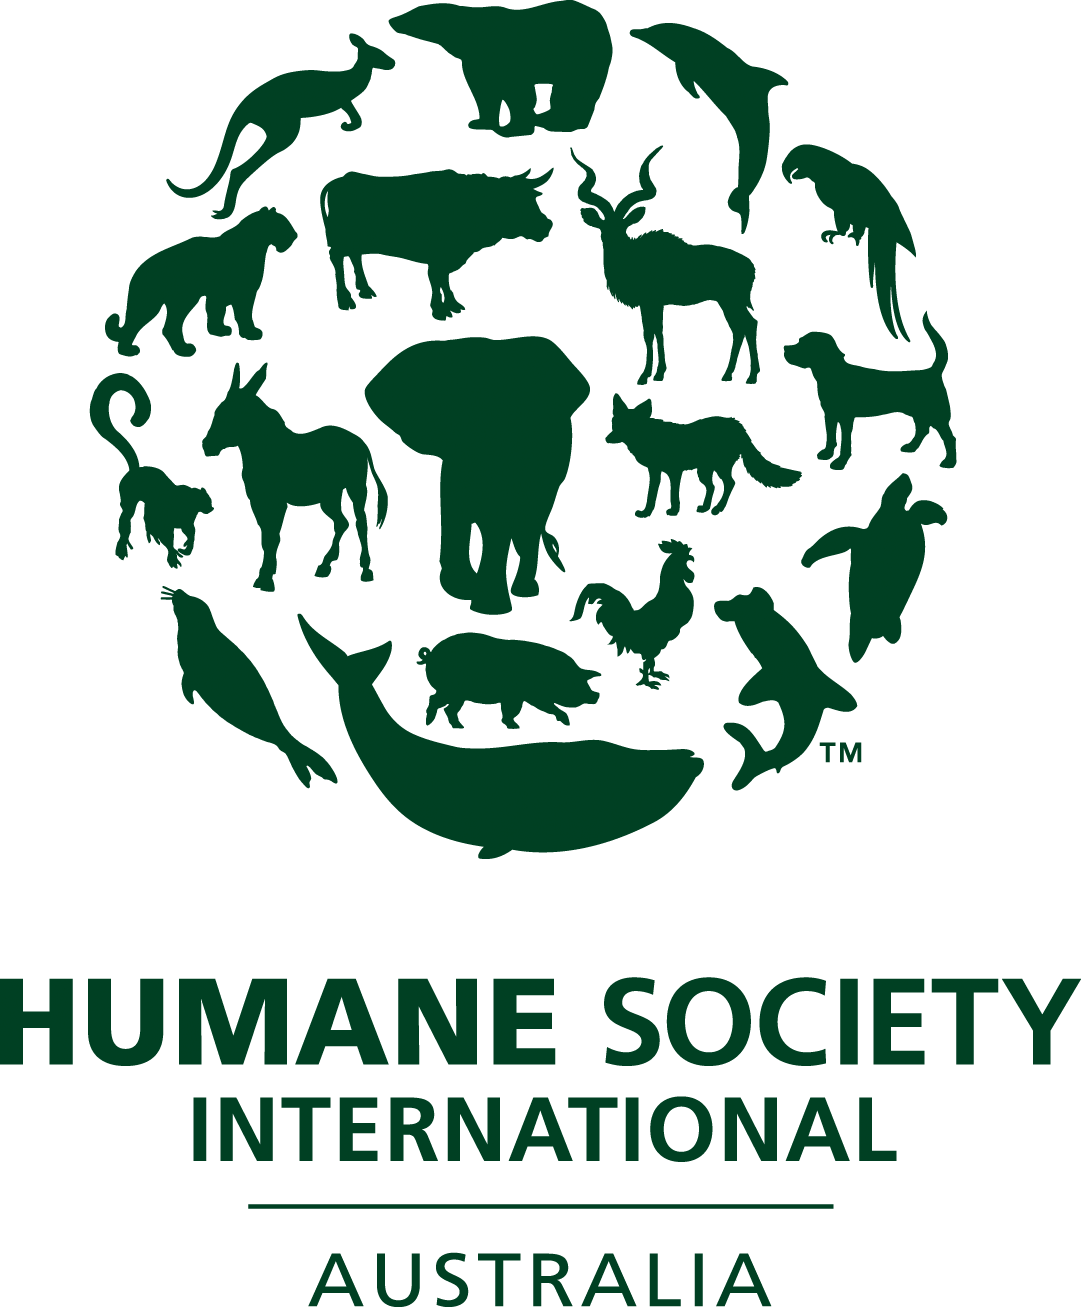 Humane Society International Australia